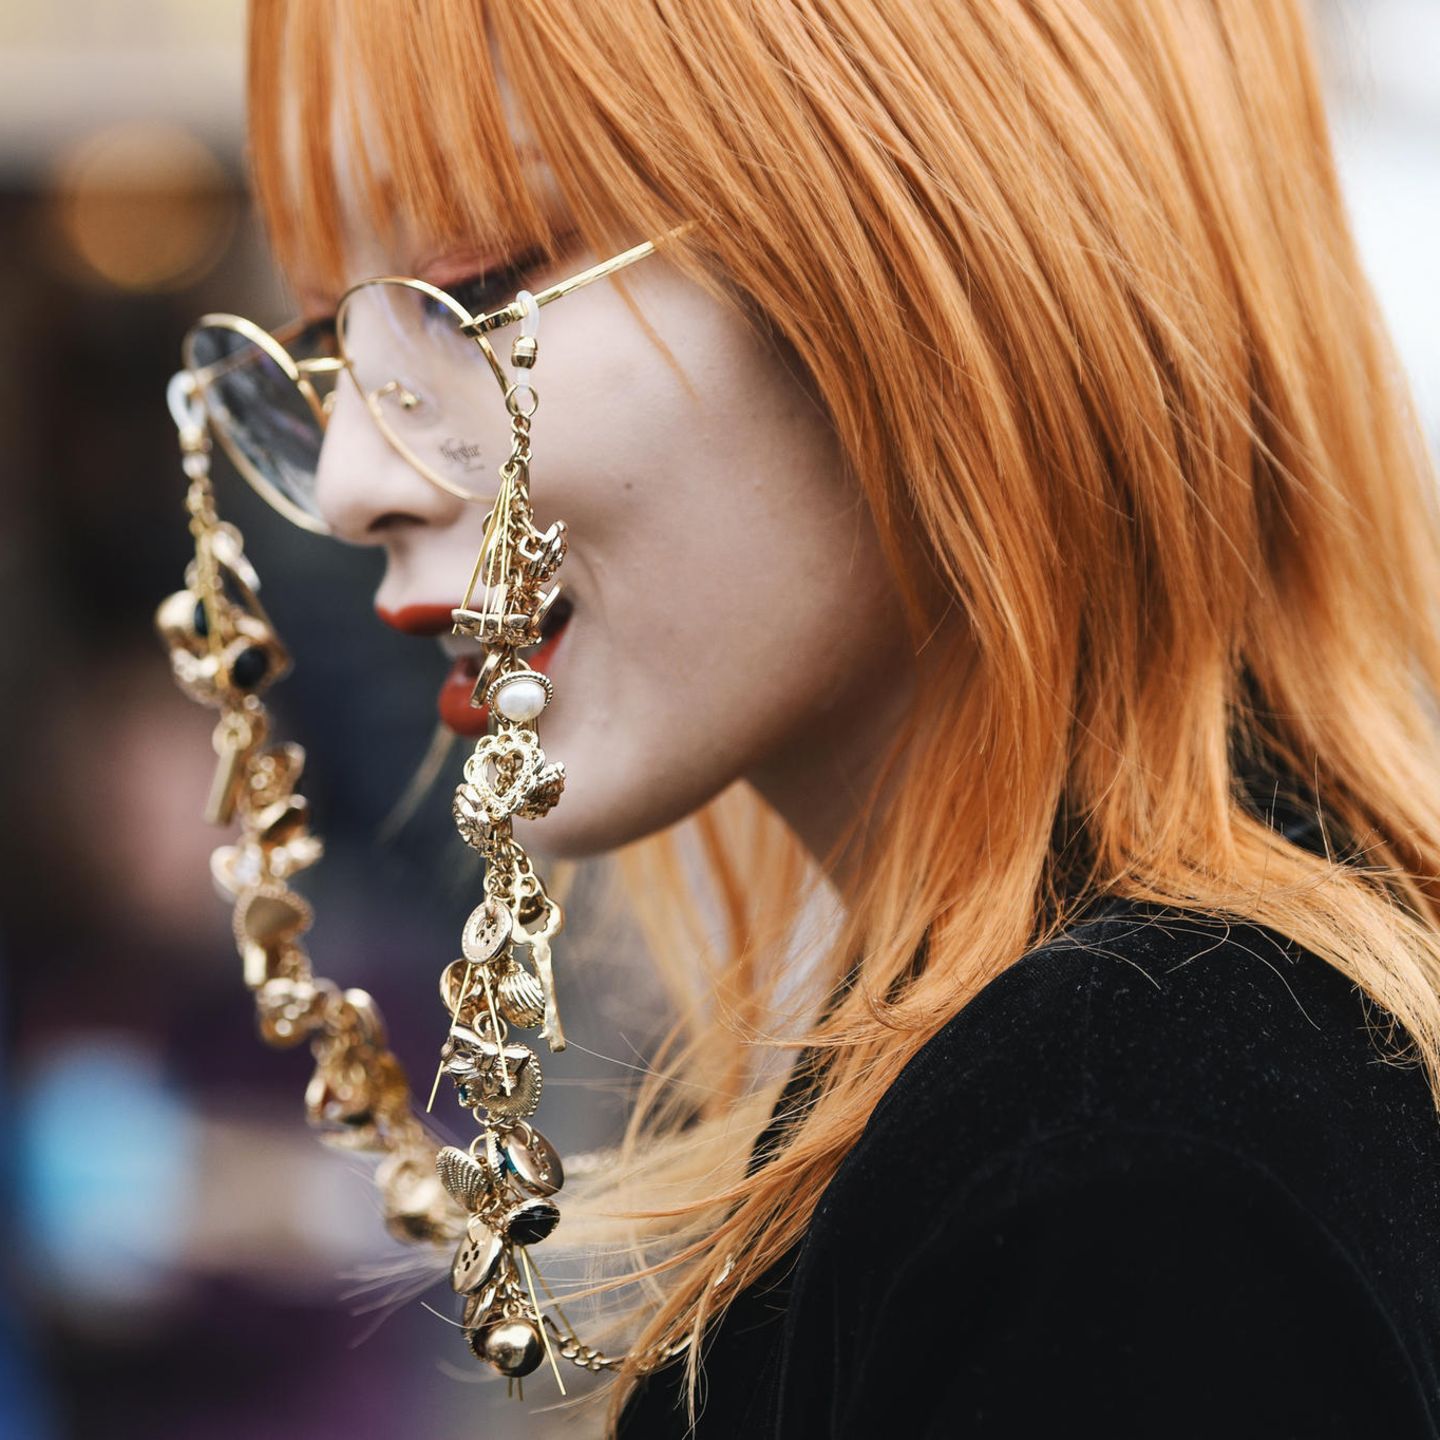 Kupfer Haare: Frau mit orange-kupferfarbenem Haar und runder Brille mit auffälliger Brillenkette